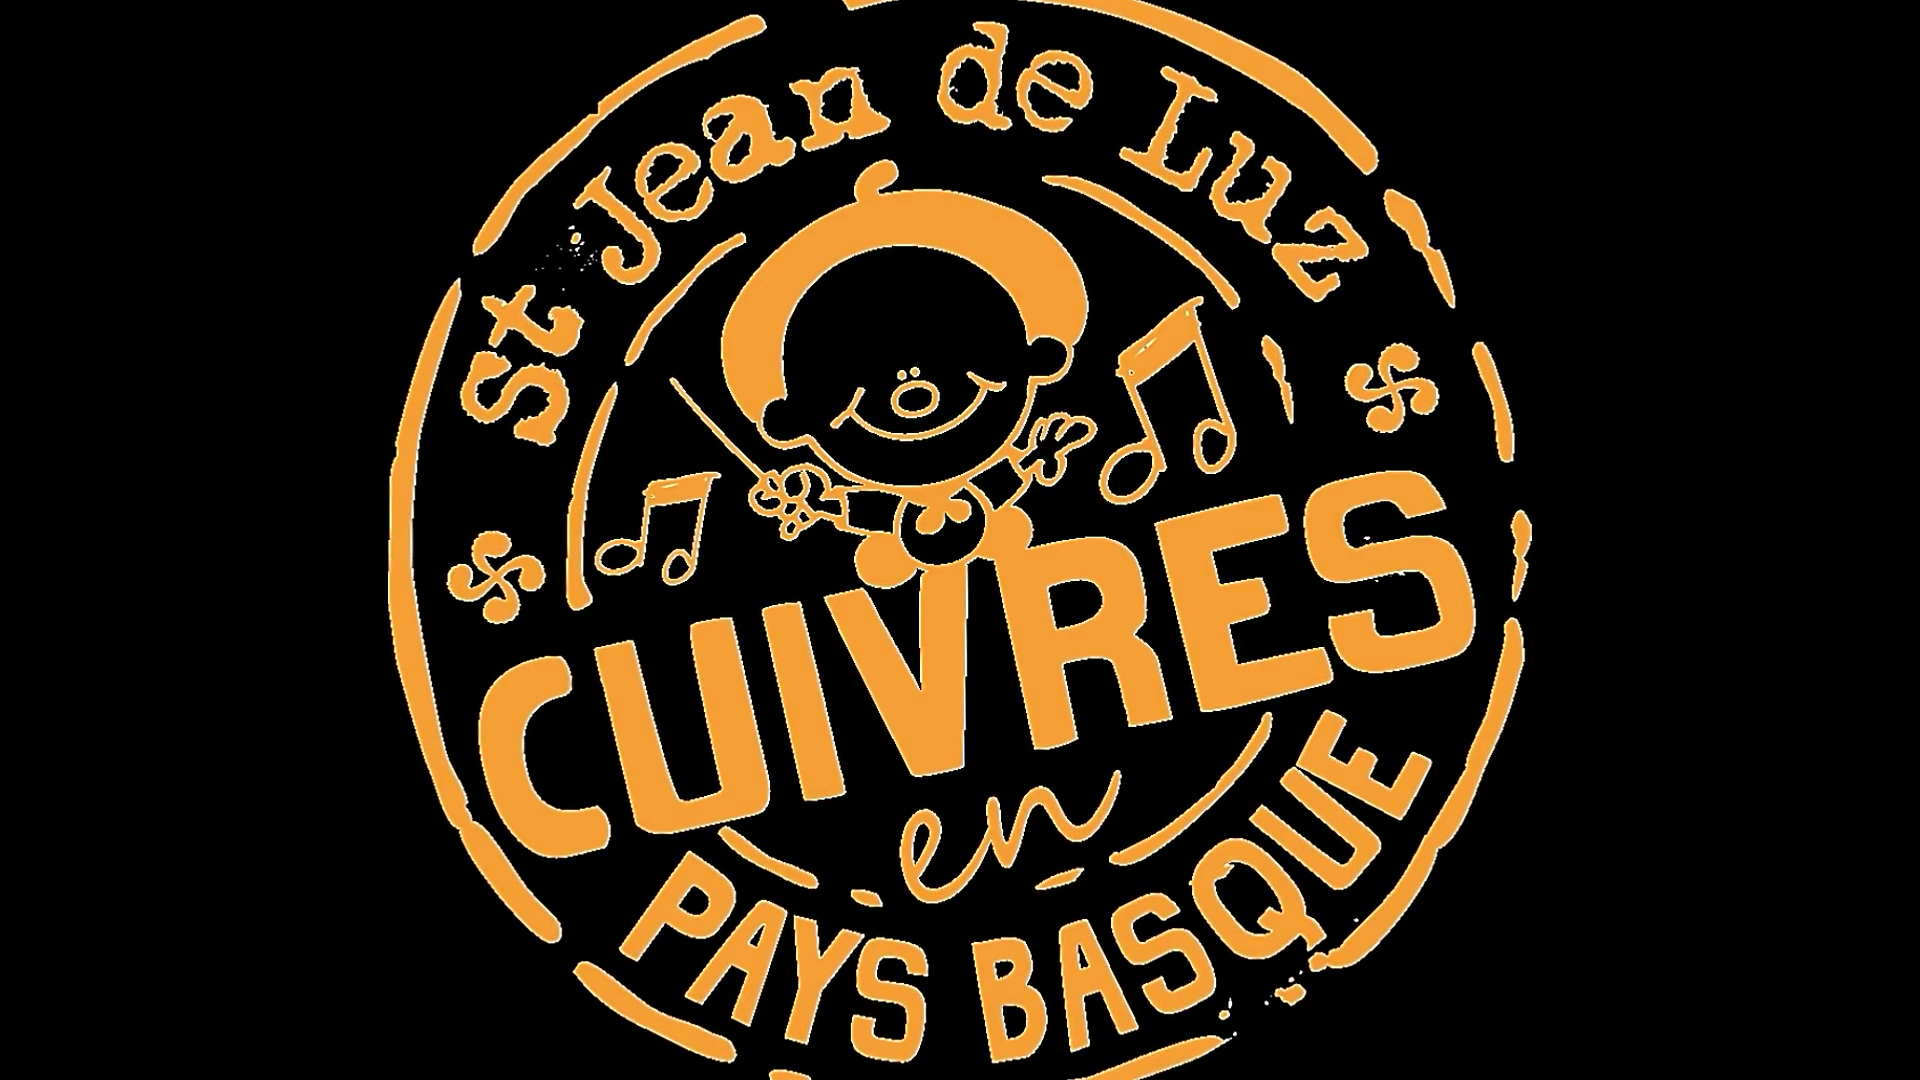 « Cuivres en Pays Basque » remercie ses sponsors et partenaires